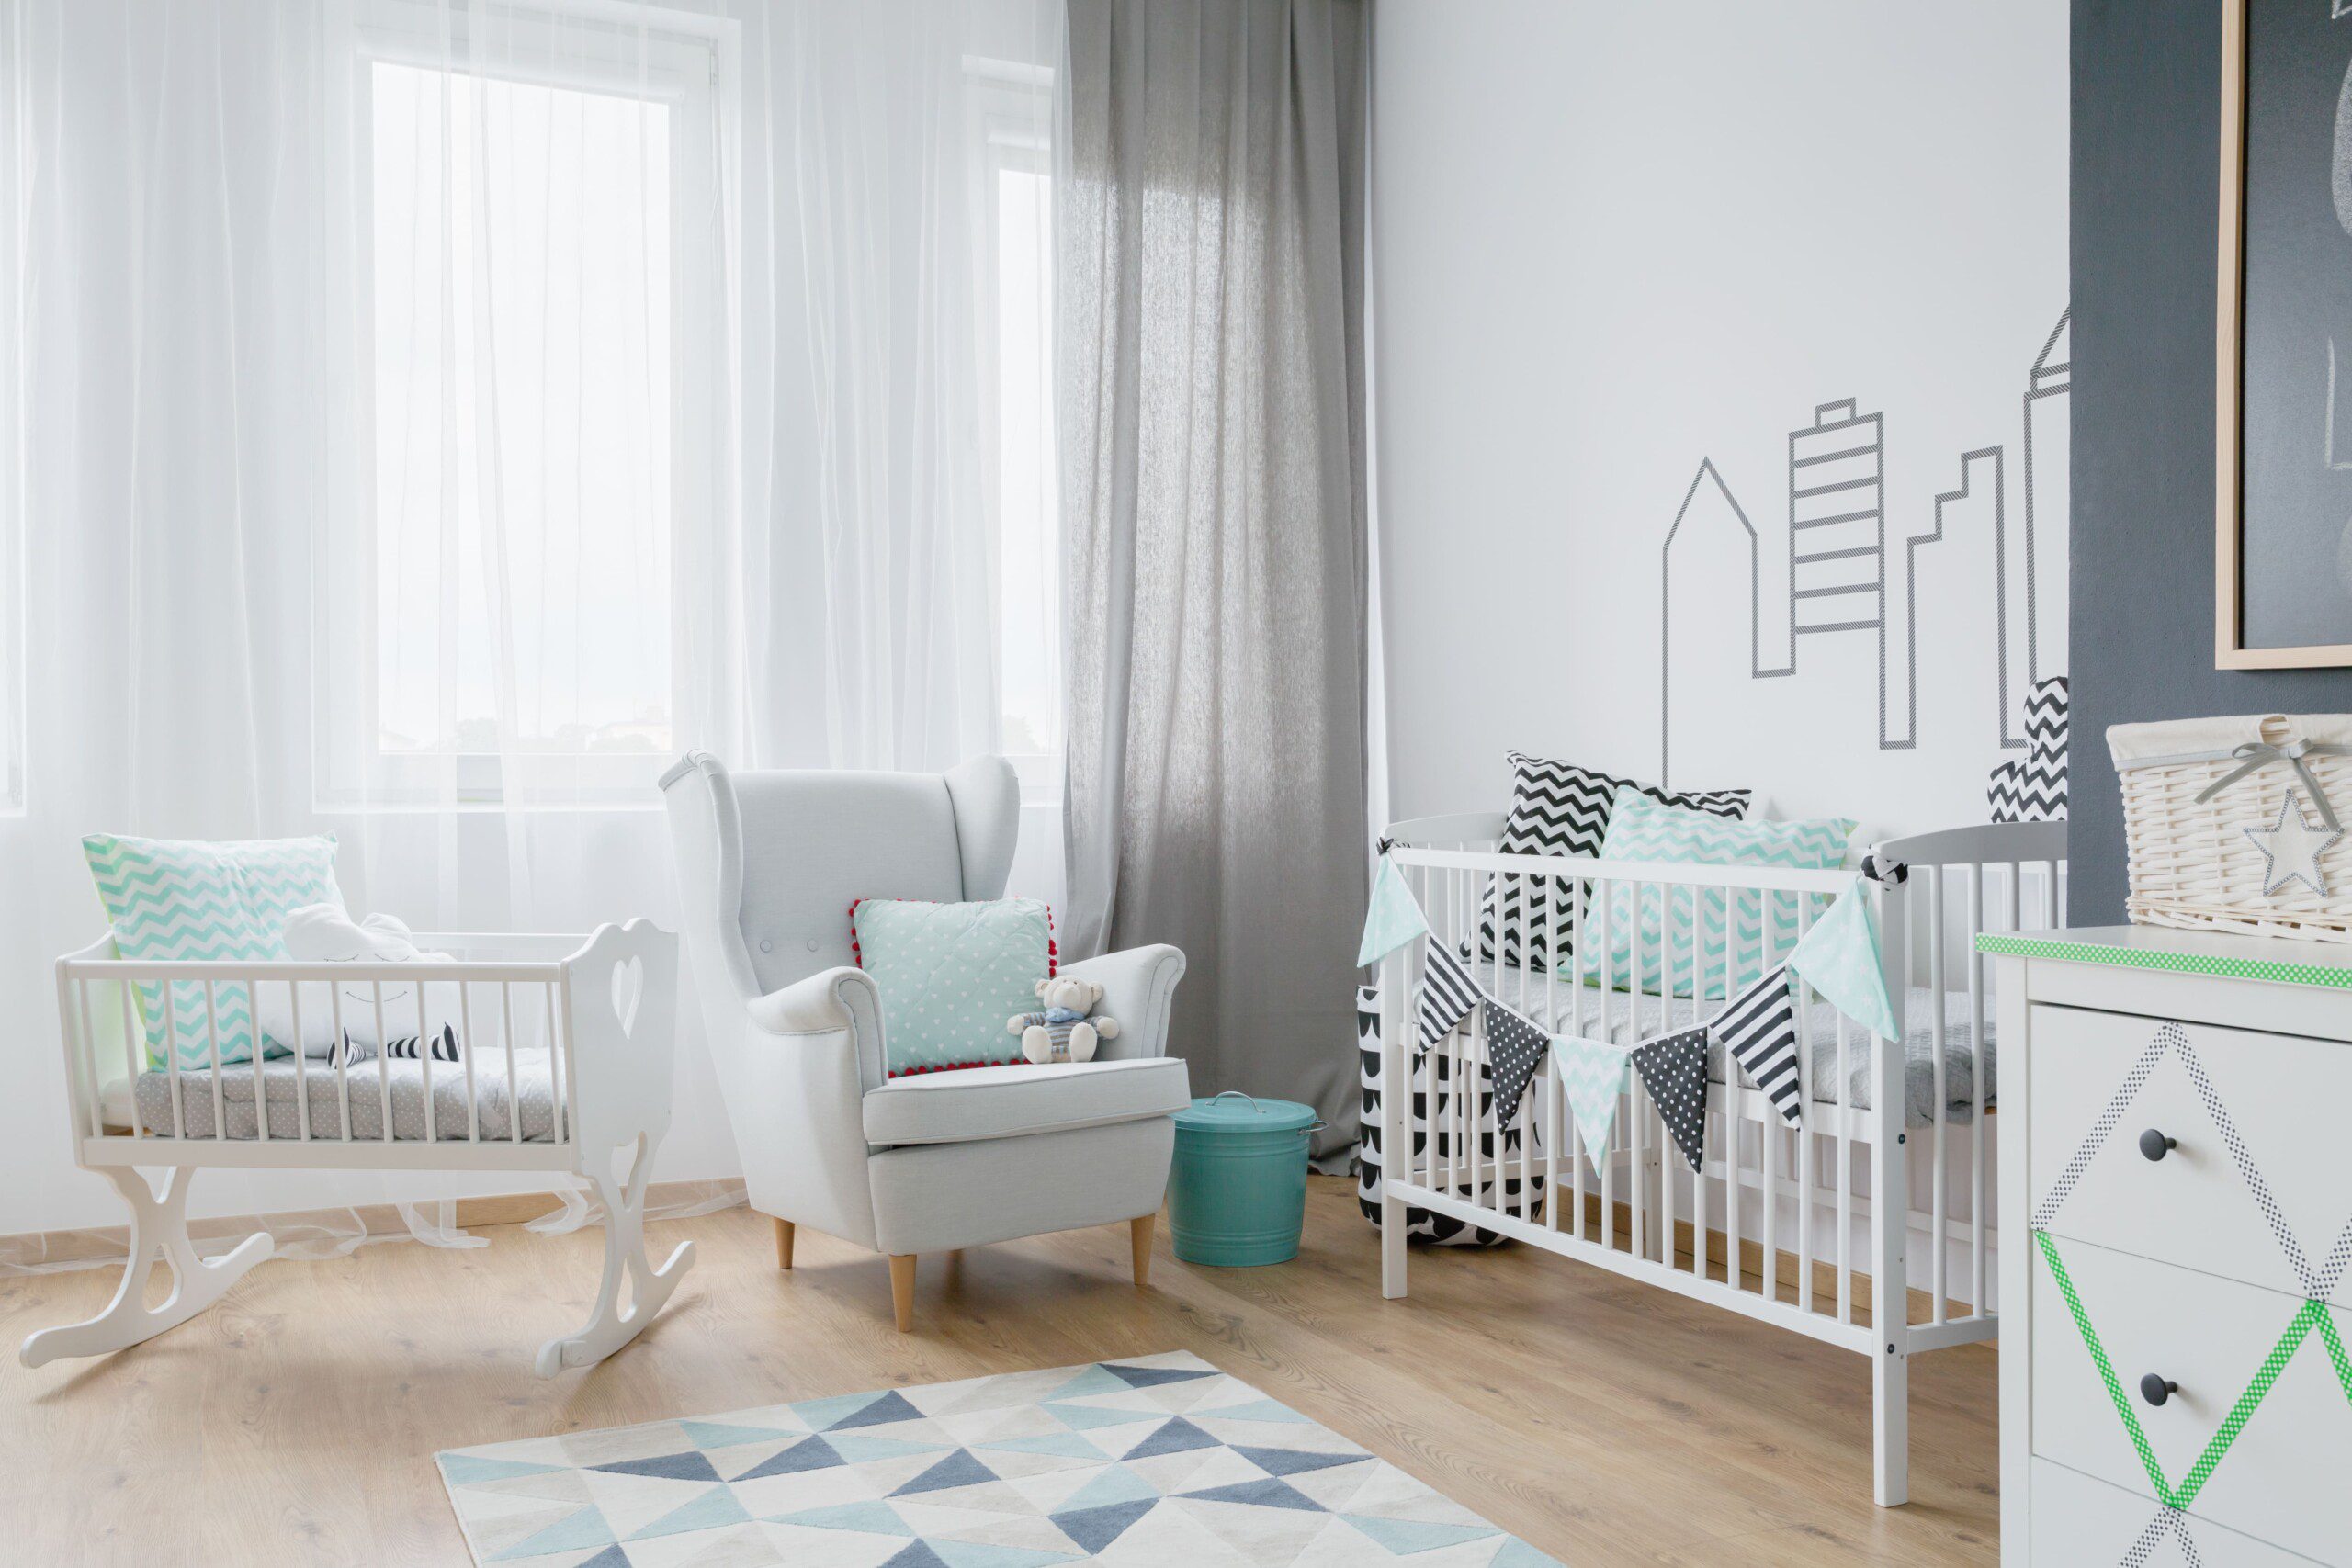 Imagem de um quarto de bebê clean com berço e poltrona de amamentação.